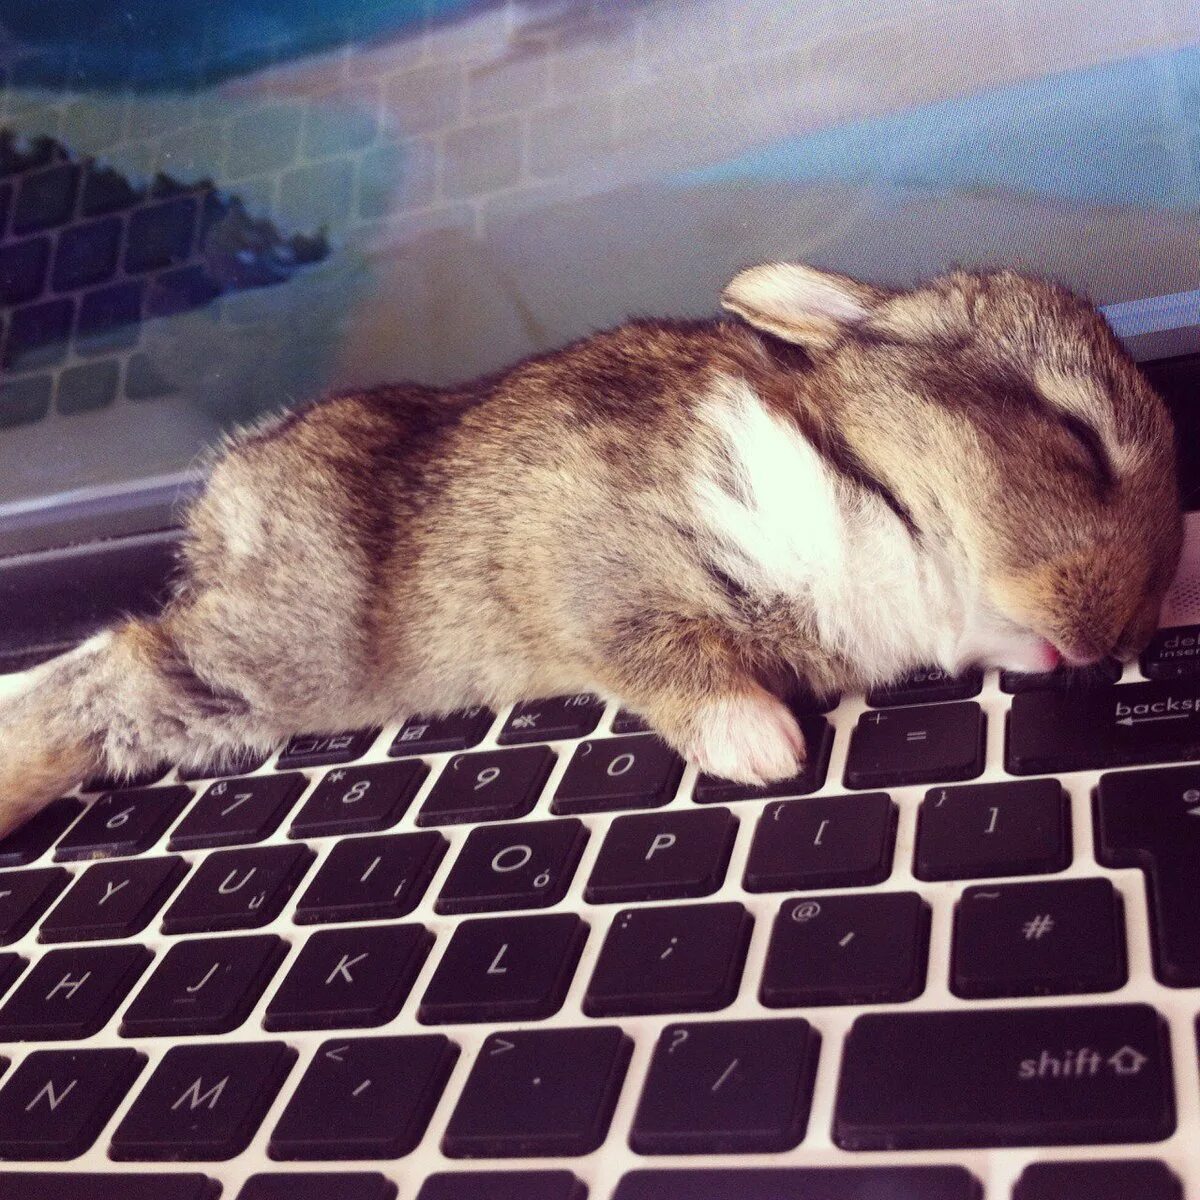 Уставший кролик. Кролик с компьютером. Заяц за компьютером. Кролик за клавиатурой.